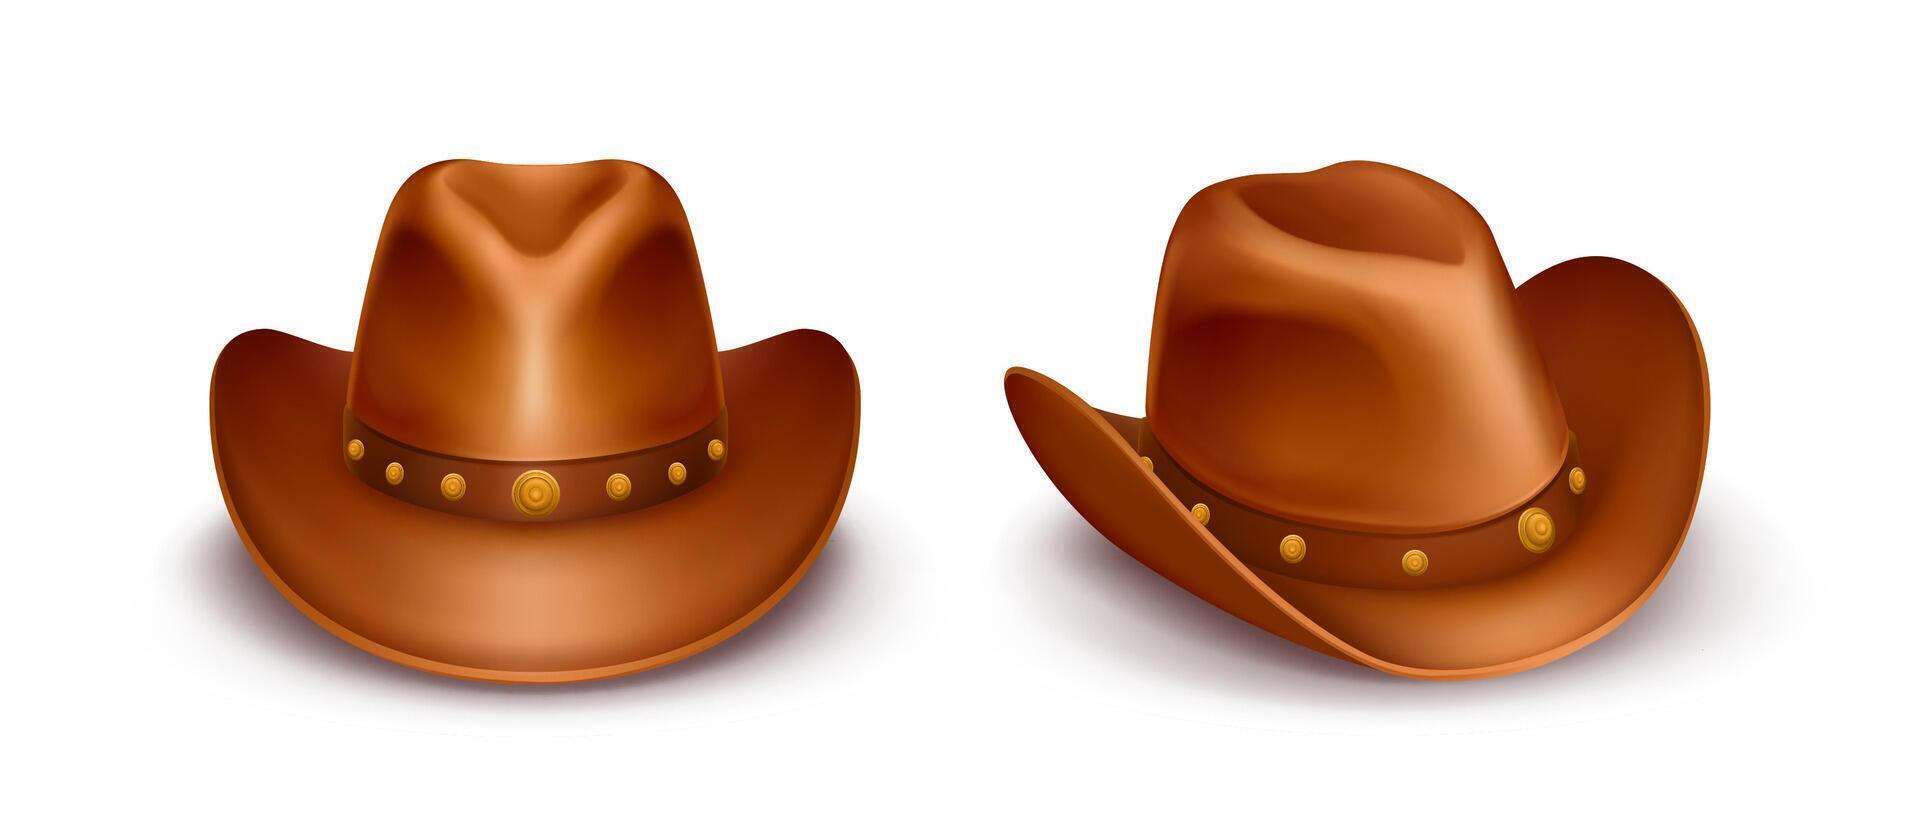 realistisch illustratie van bruin cowboy hoeden met band aan de overkant de bovenkant, geïsoleerd Aan wit achtergrond. stetson van sheriff, leer boer of veehouder kap. Verenigde Staten van Amerika western stijl. wild west concept. vector